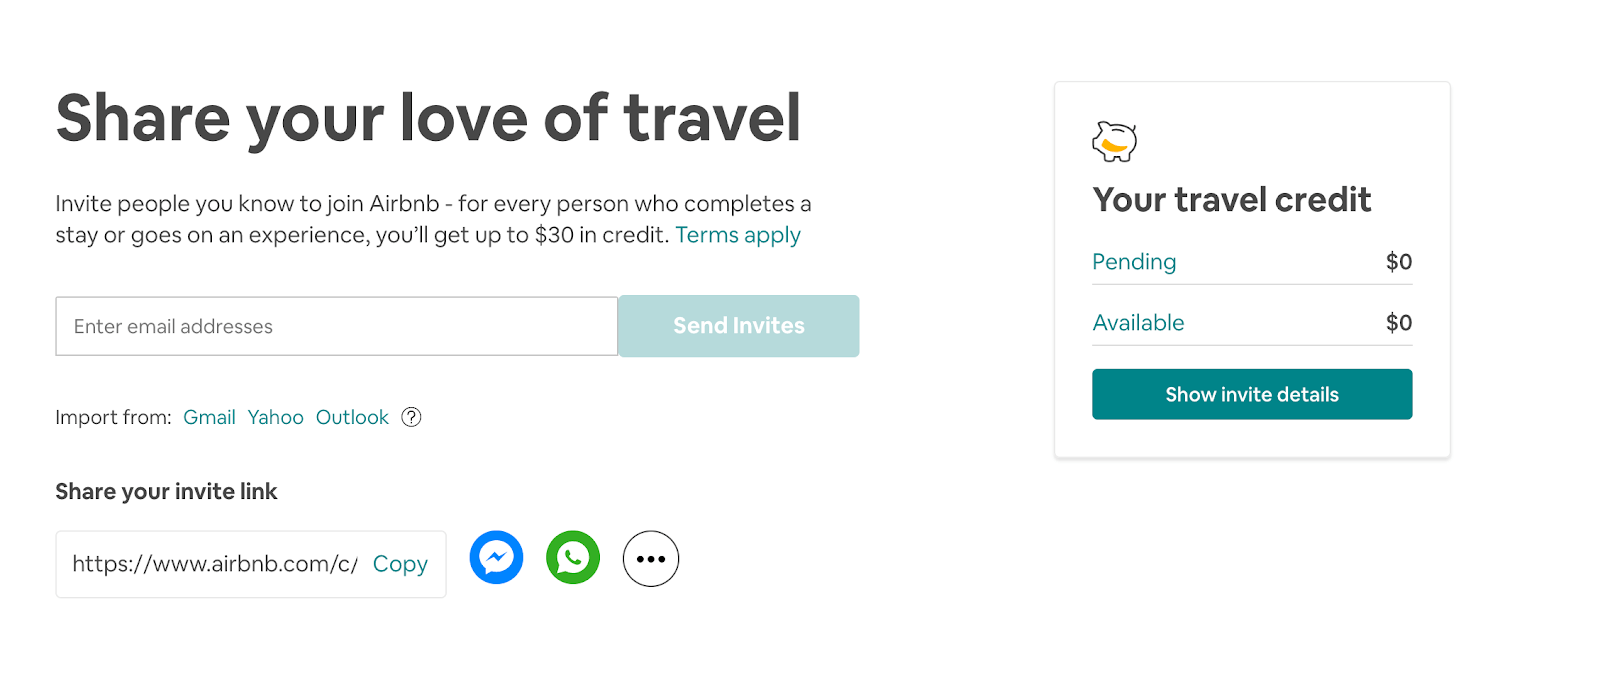 Un código promocional de Airbnb te ayudará a viajar por menos